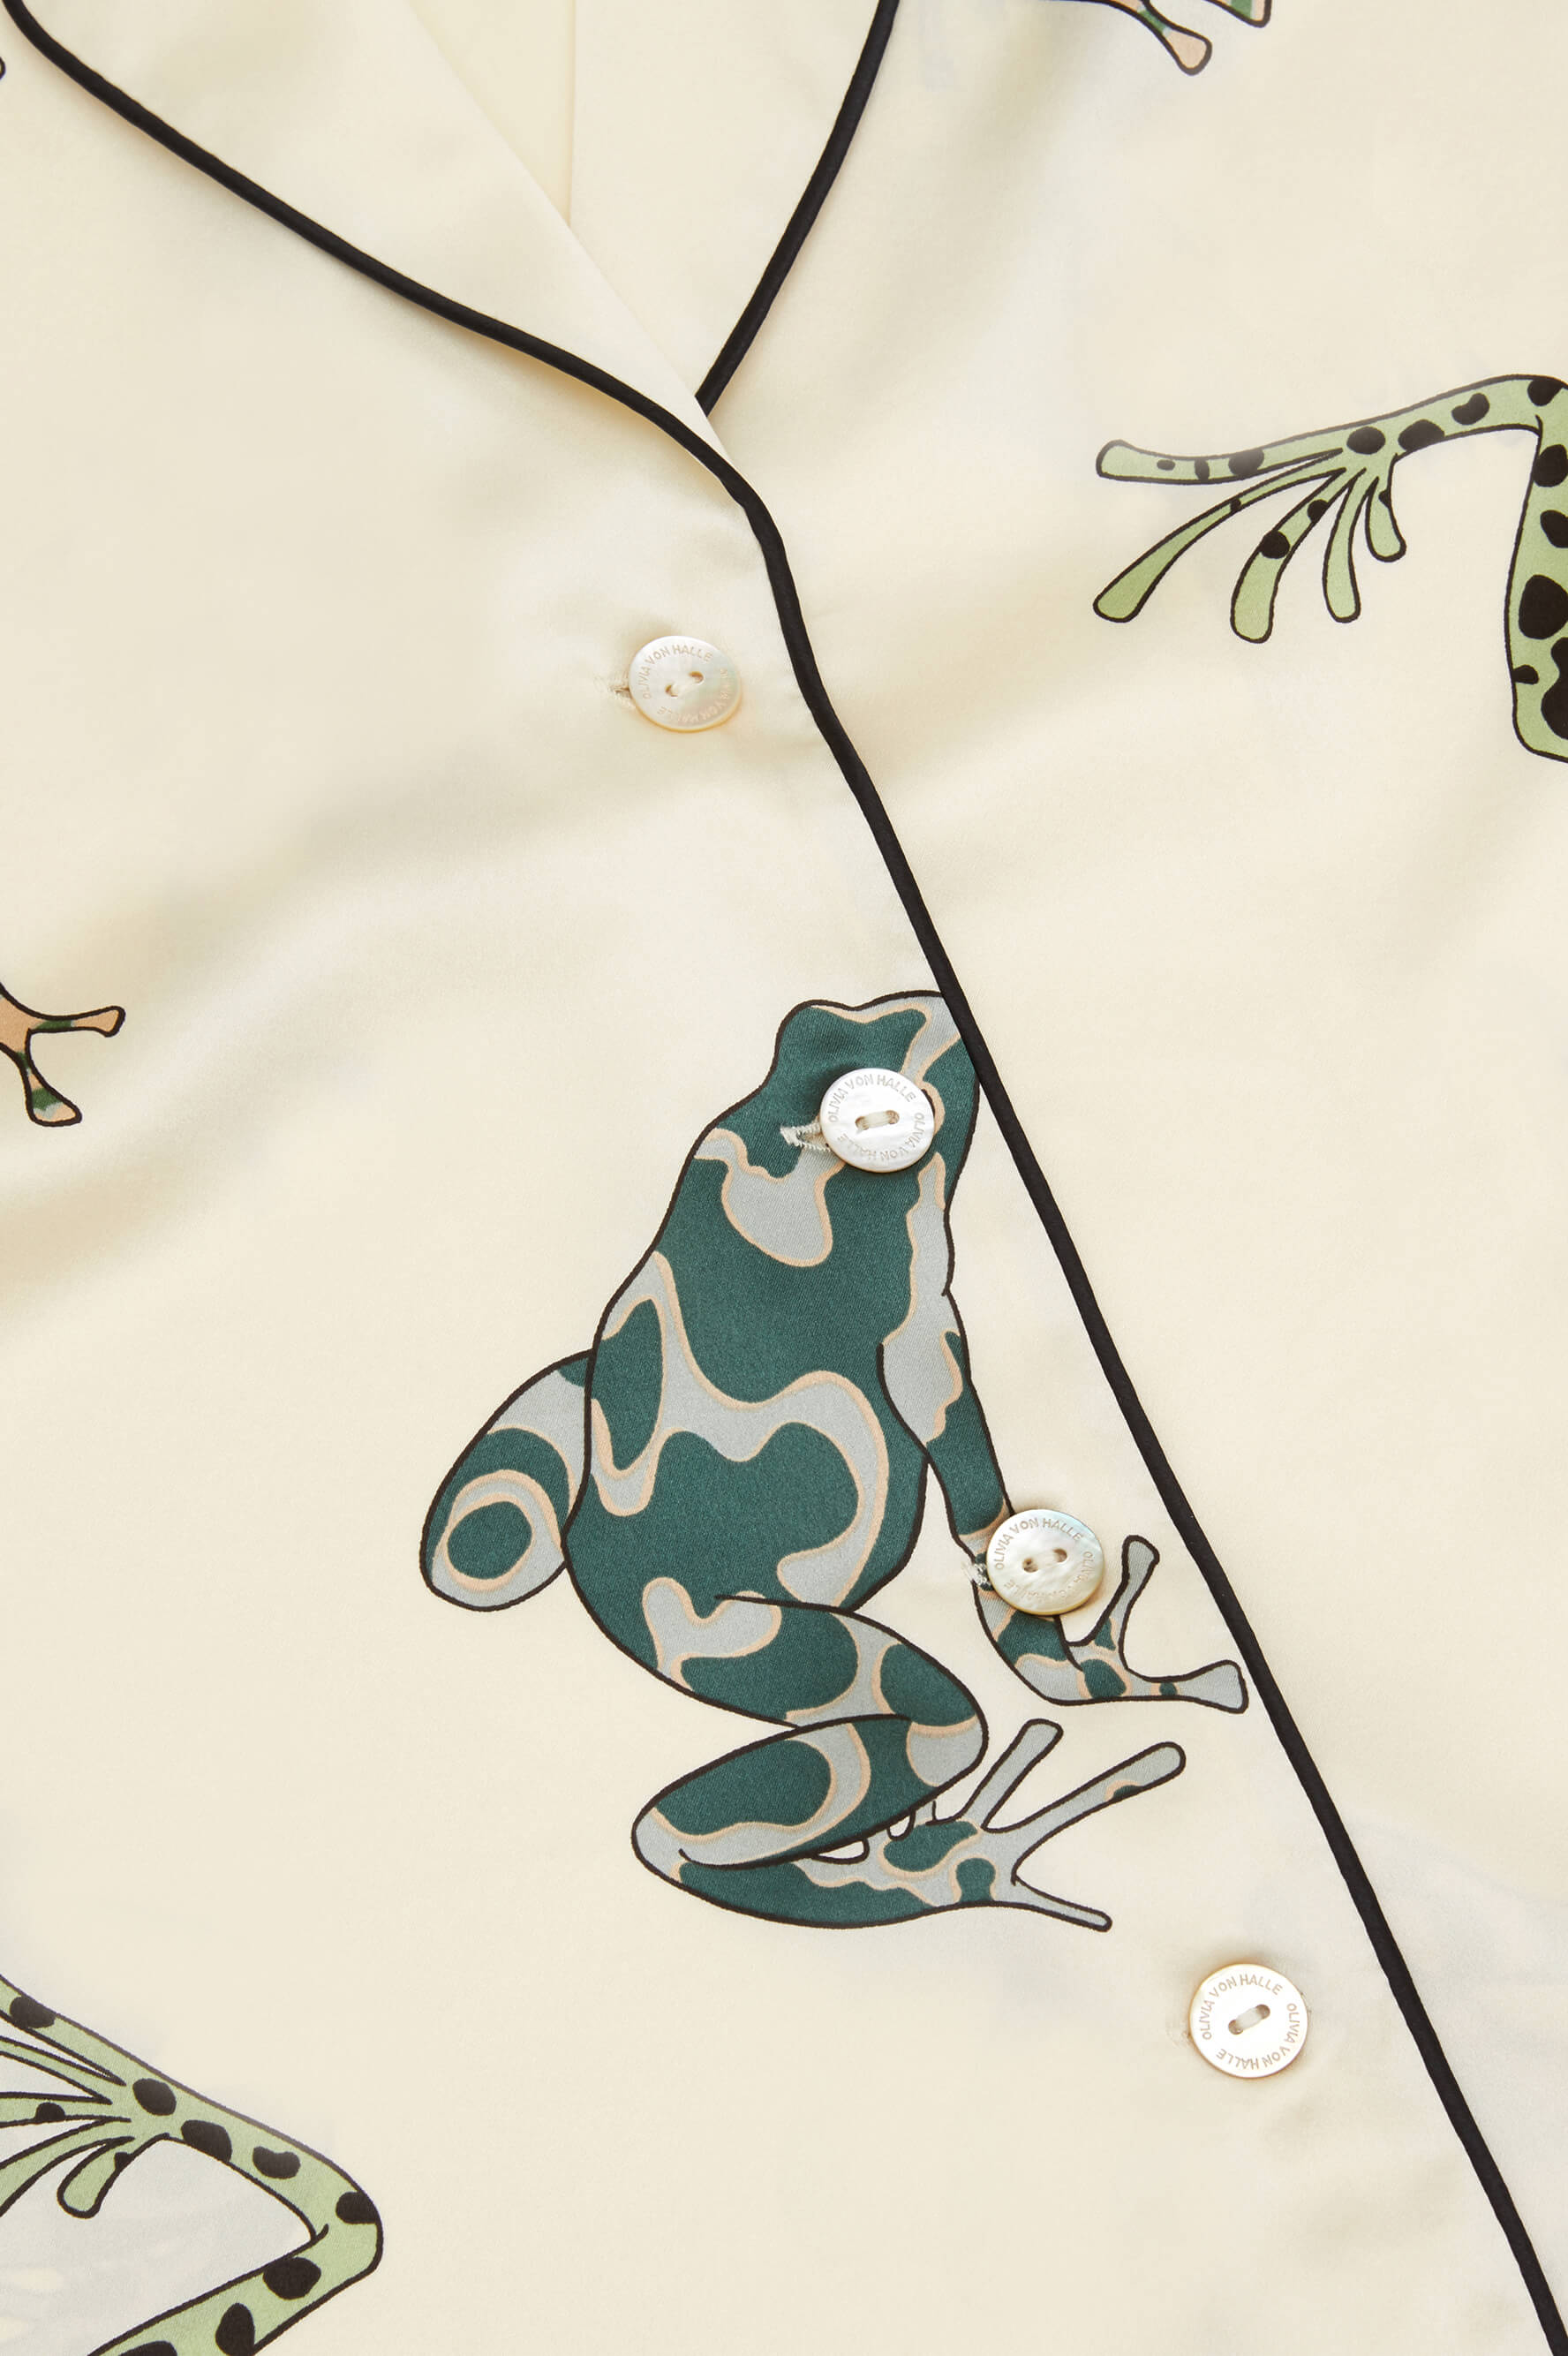 Lila Lumi Ivory Frog Pajamas in Silk Satin